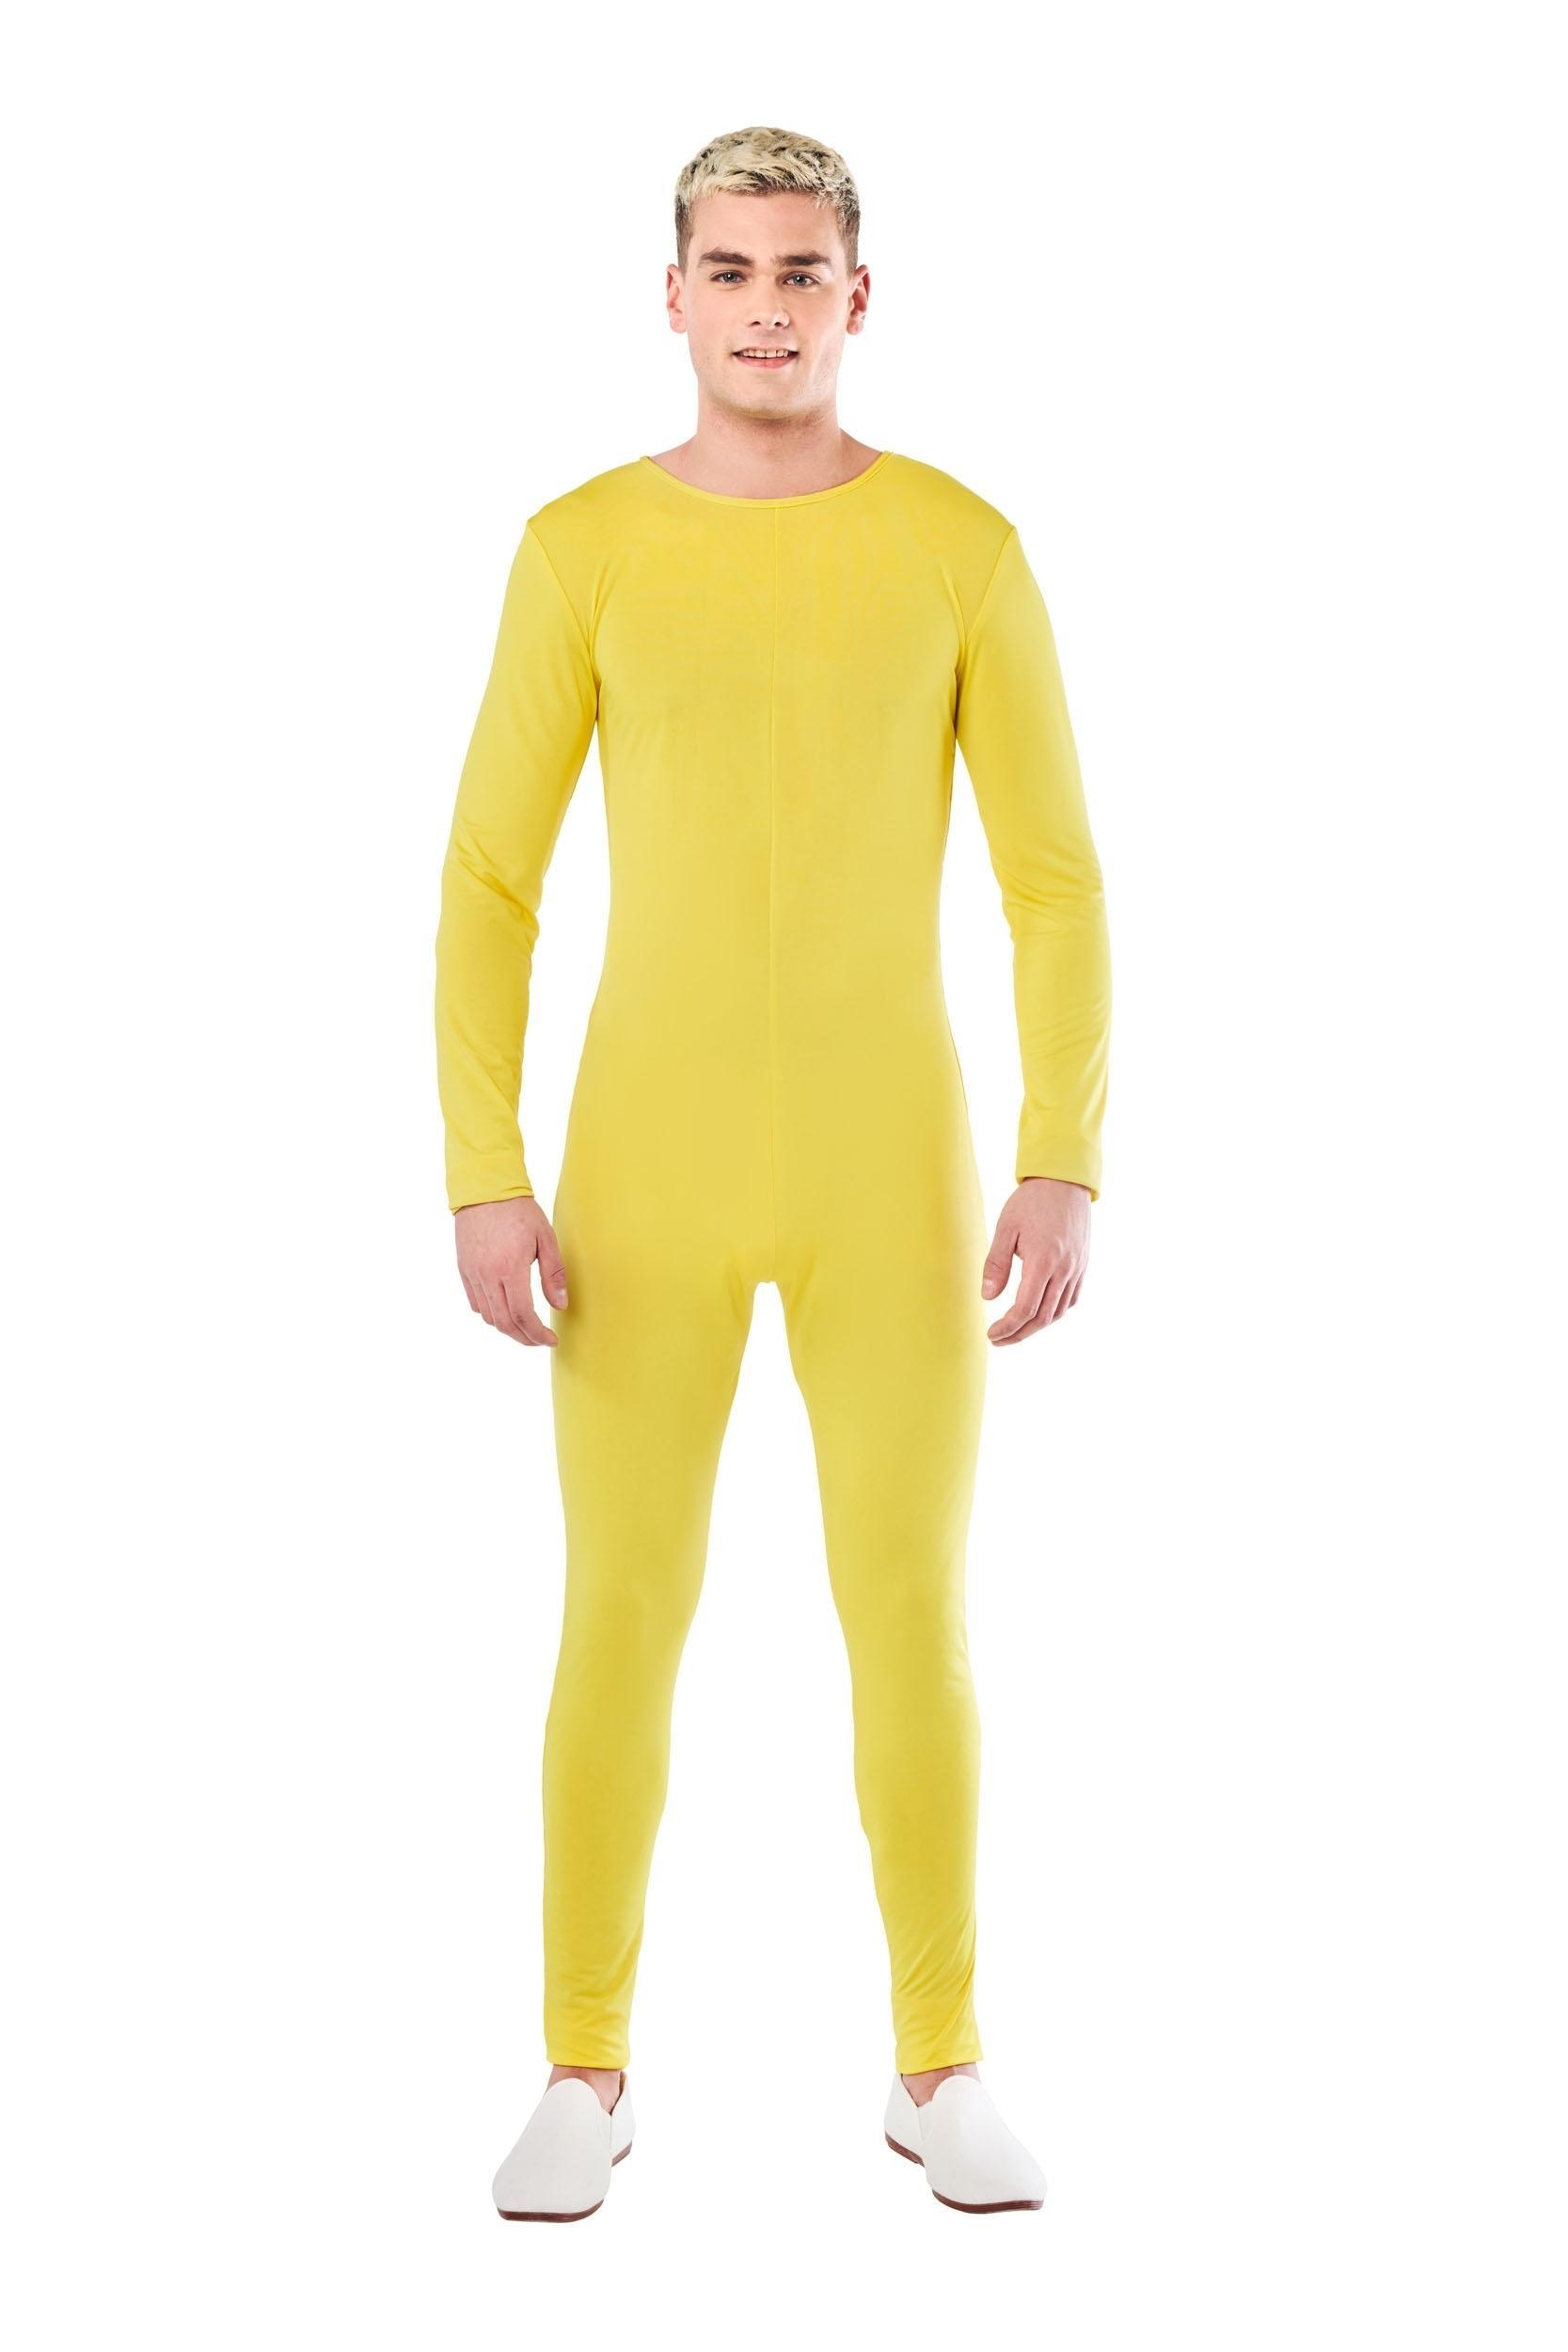 Mono de película para hombre, disfraz de ladrón con correa, color amarillo,  para Halloween y adultos - AliExpress